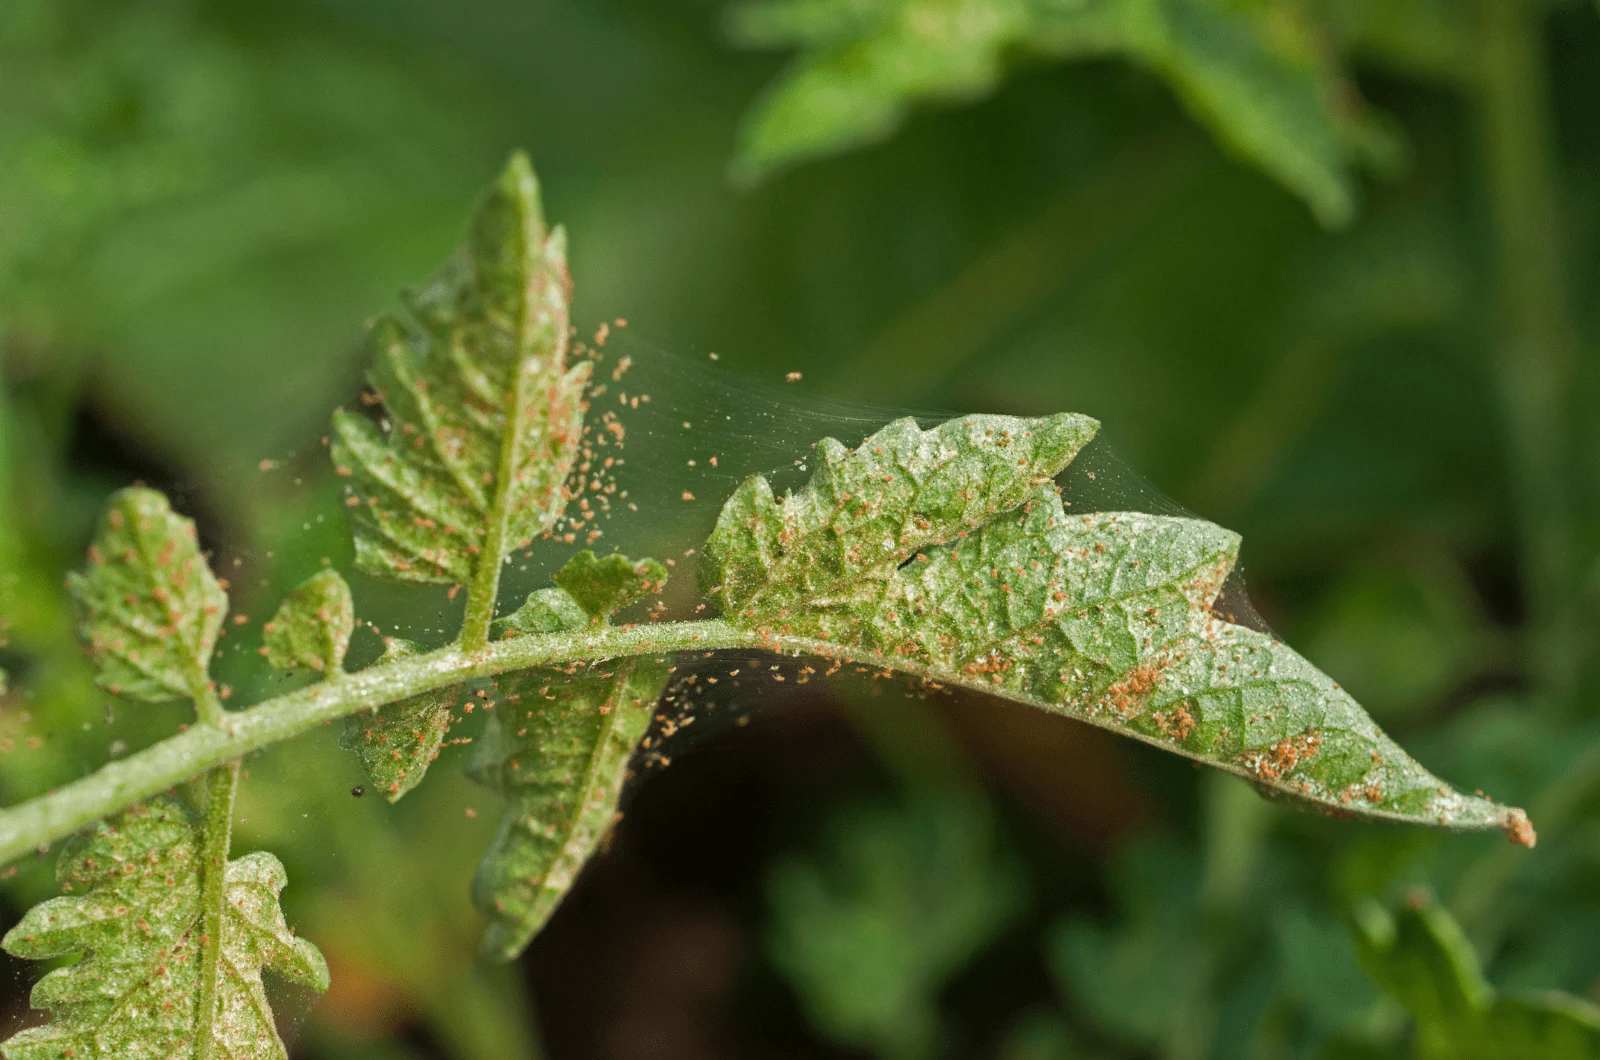 Spider Mites on plant